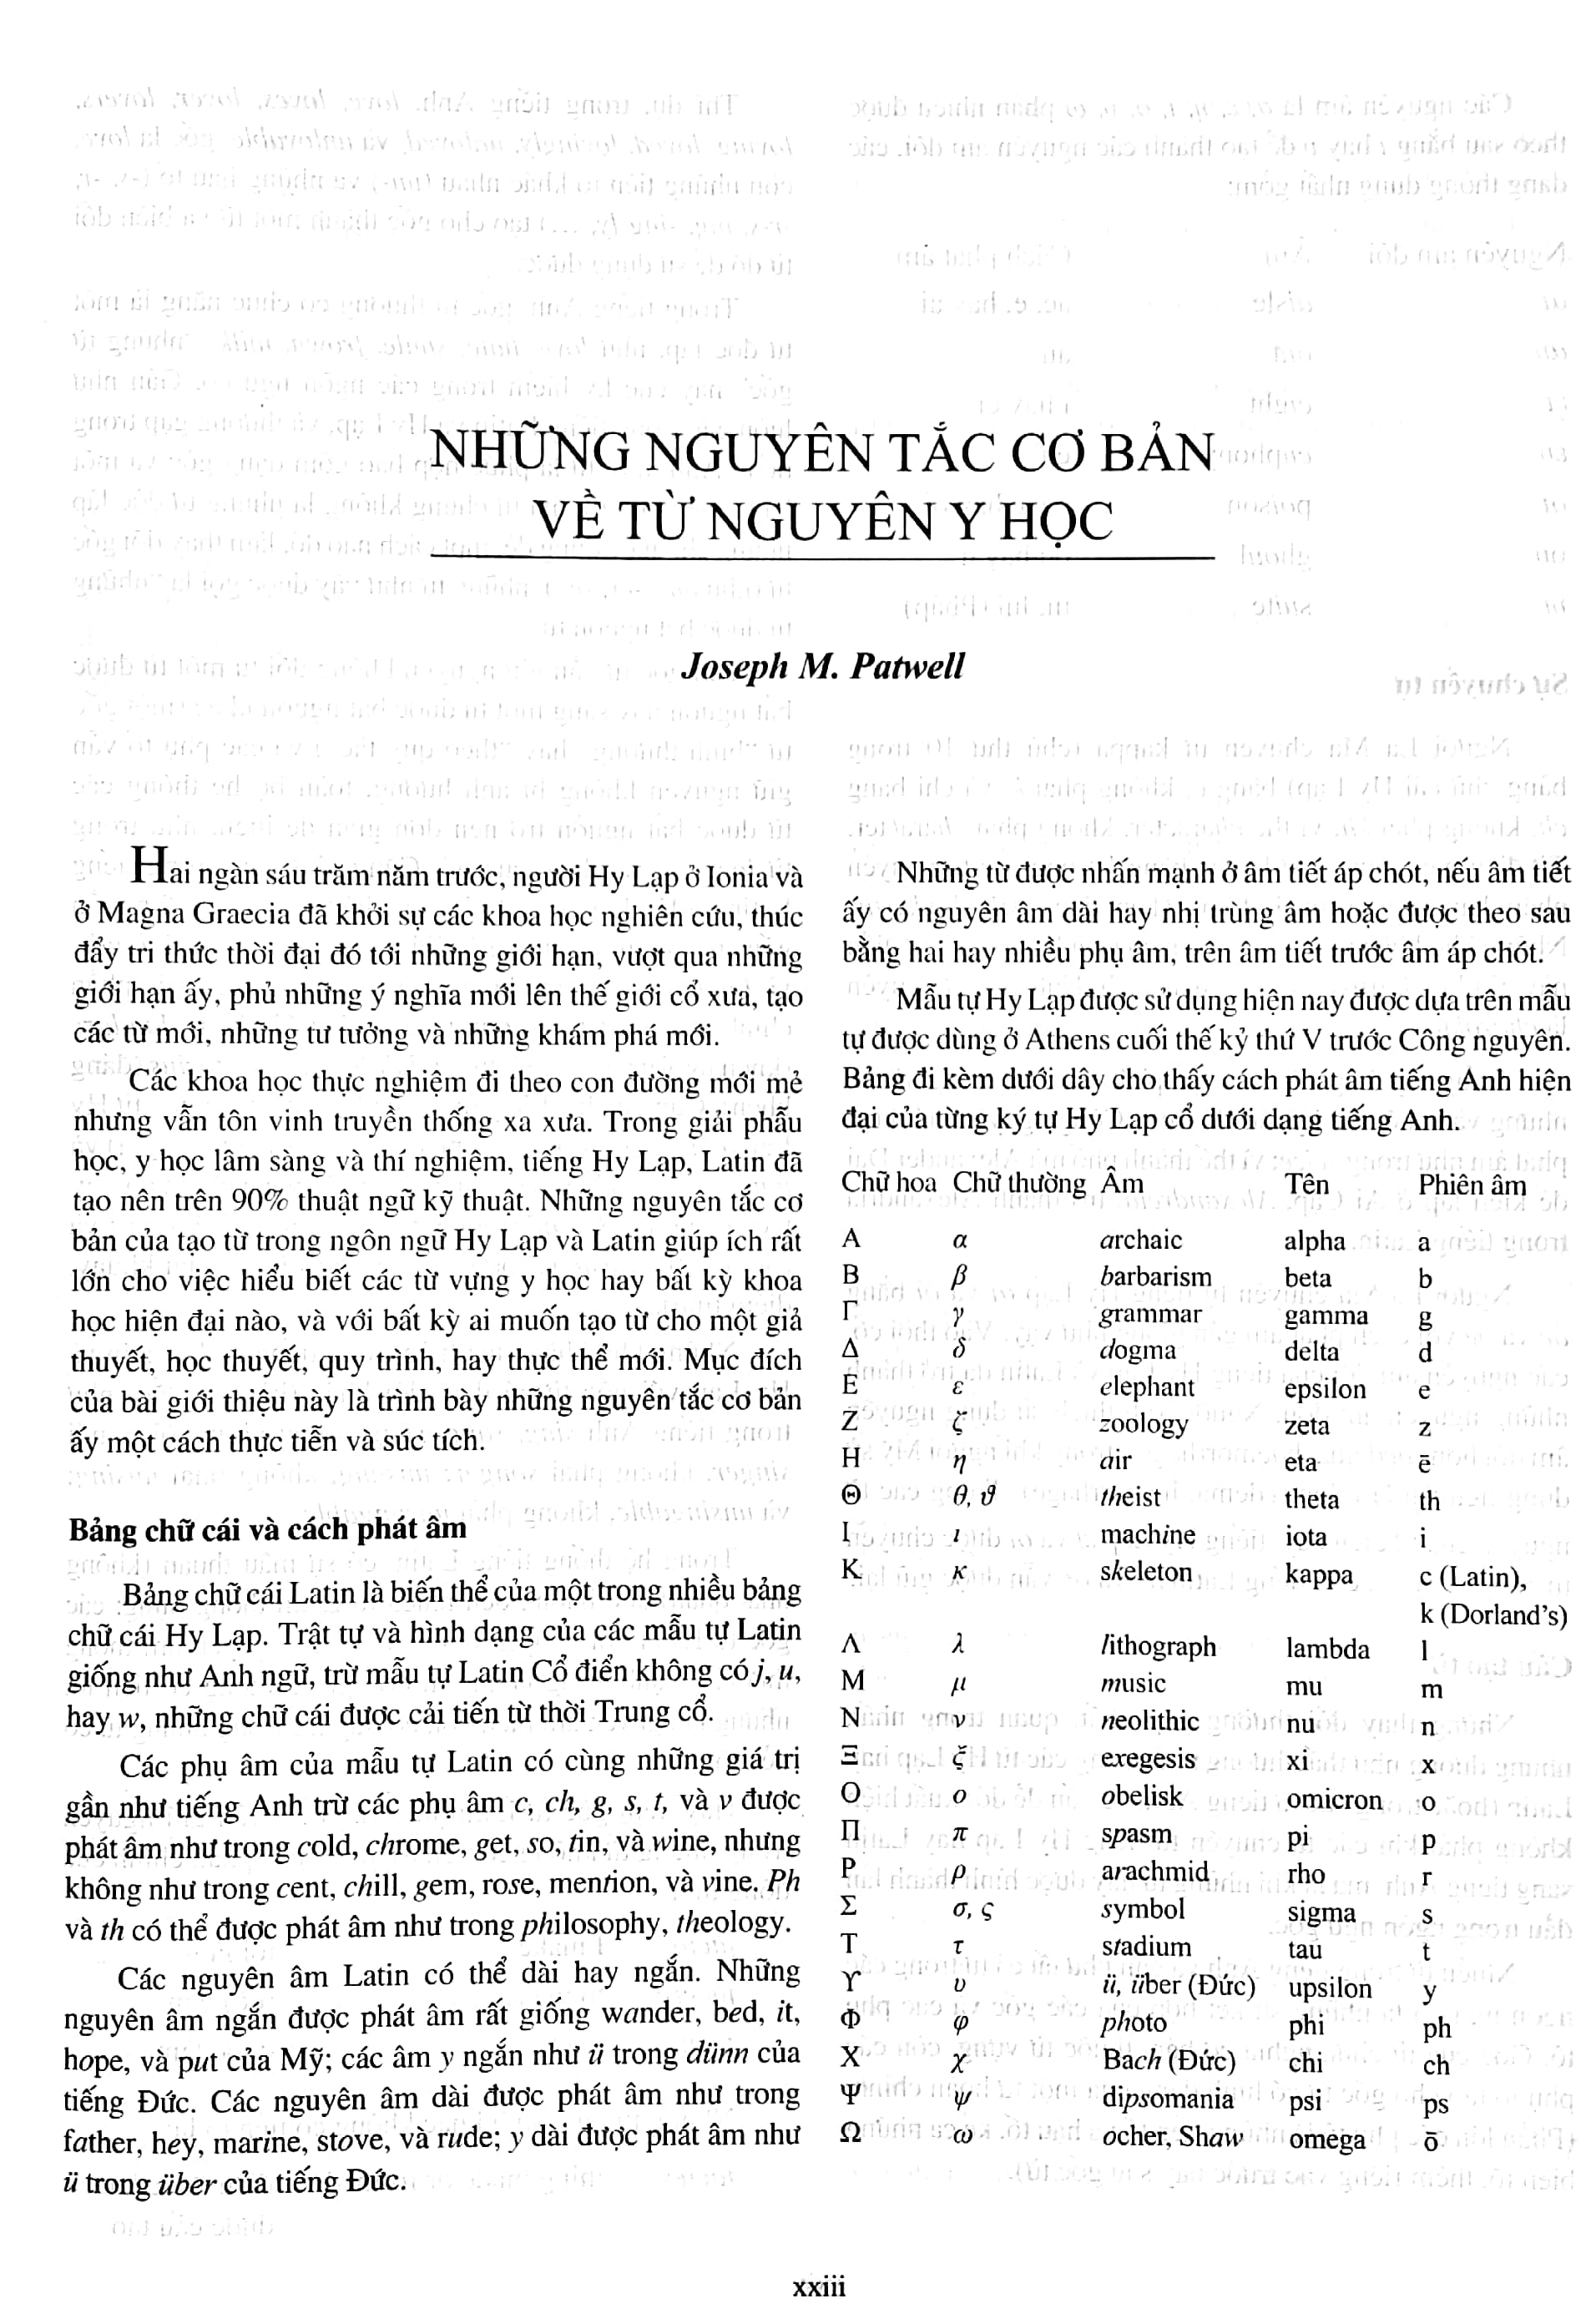 Từ Điển Y Học DorLand Anh - Việt PDF